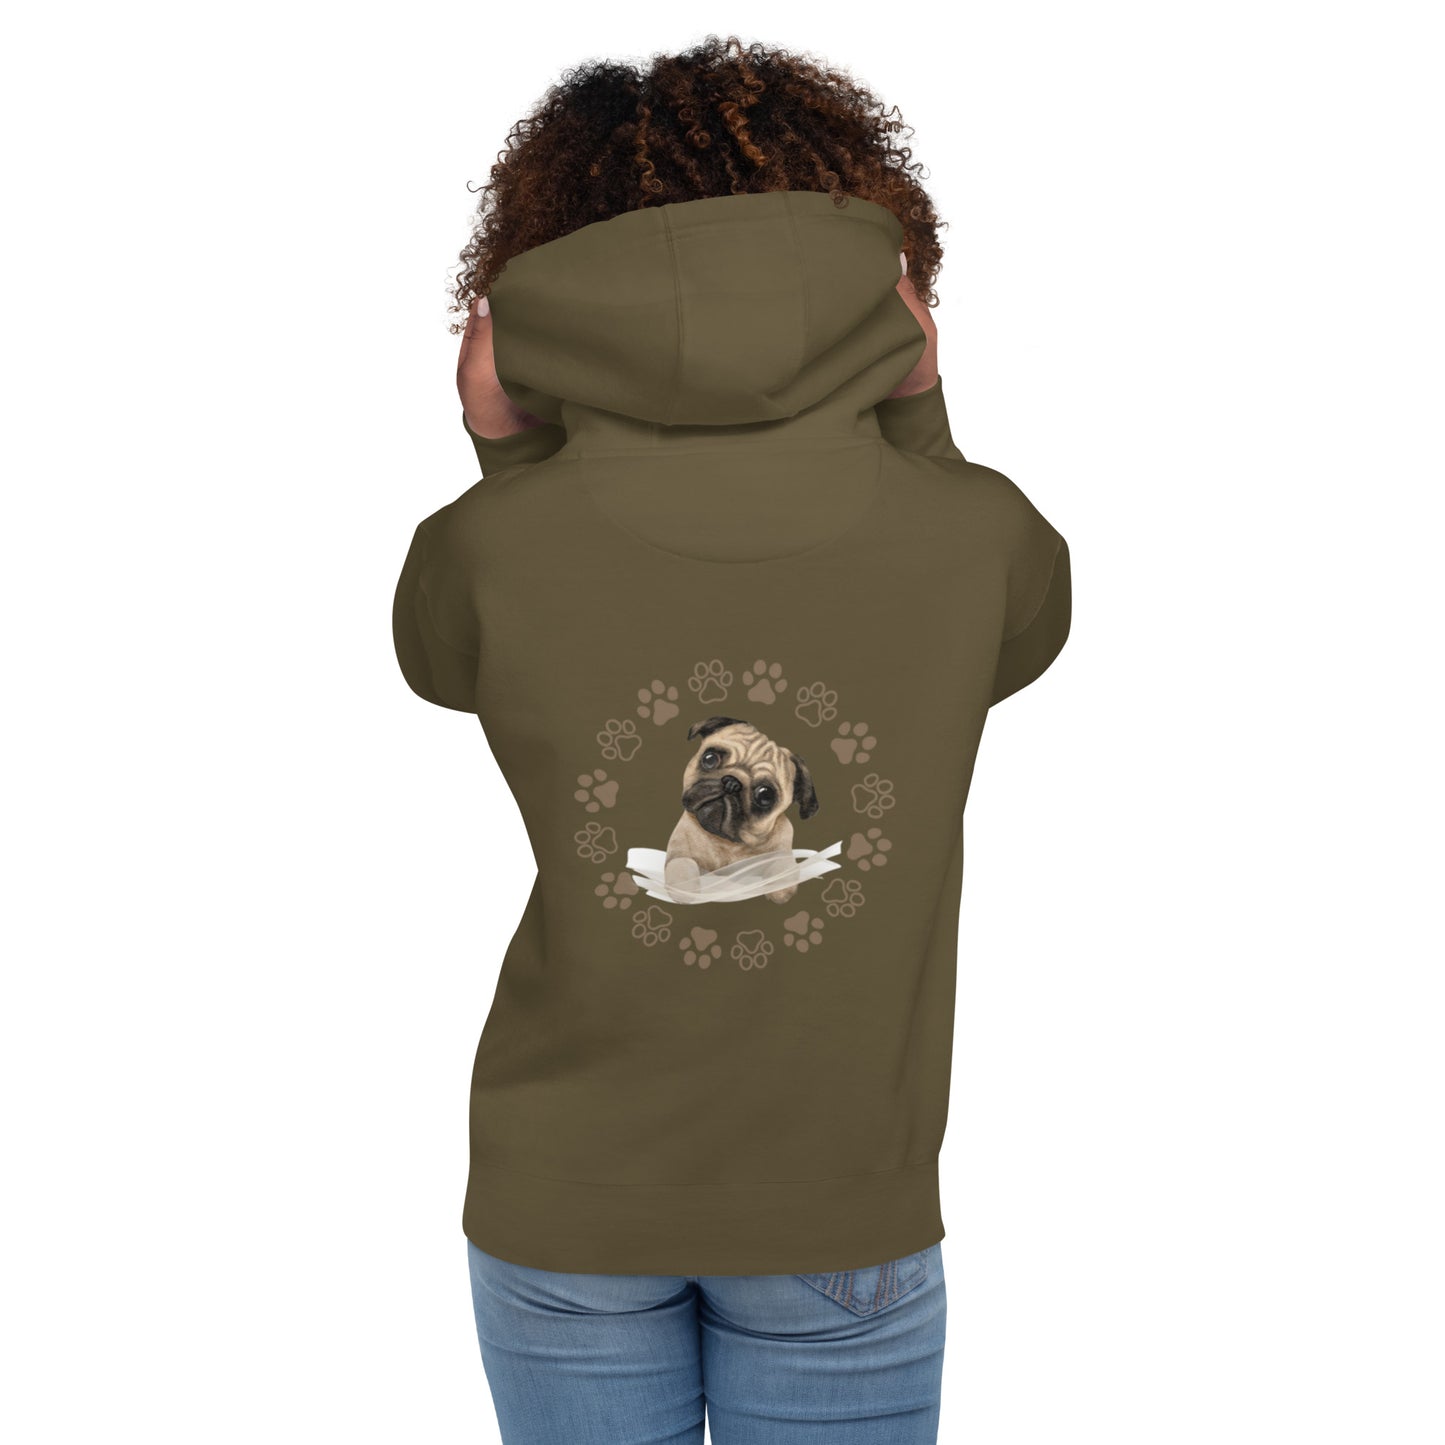 Unisex Hoodie / Boston terrier lovers gift / Unique dog lovers gift / Boston terrier gift